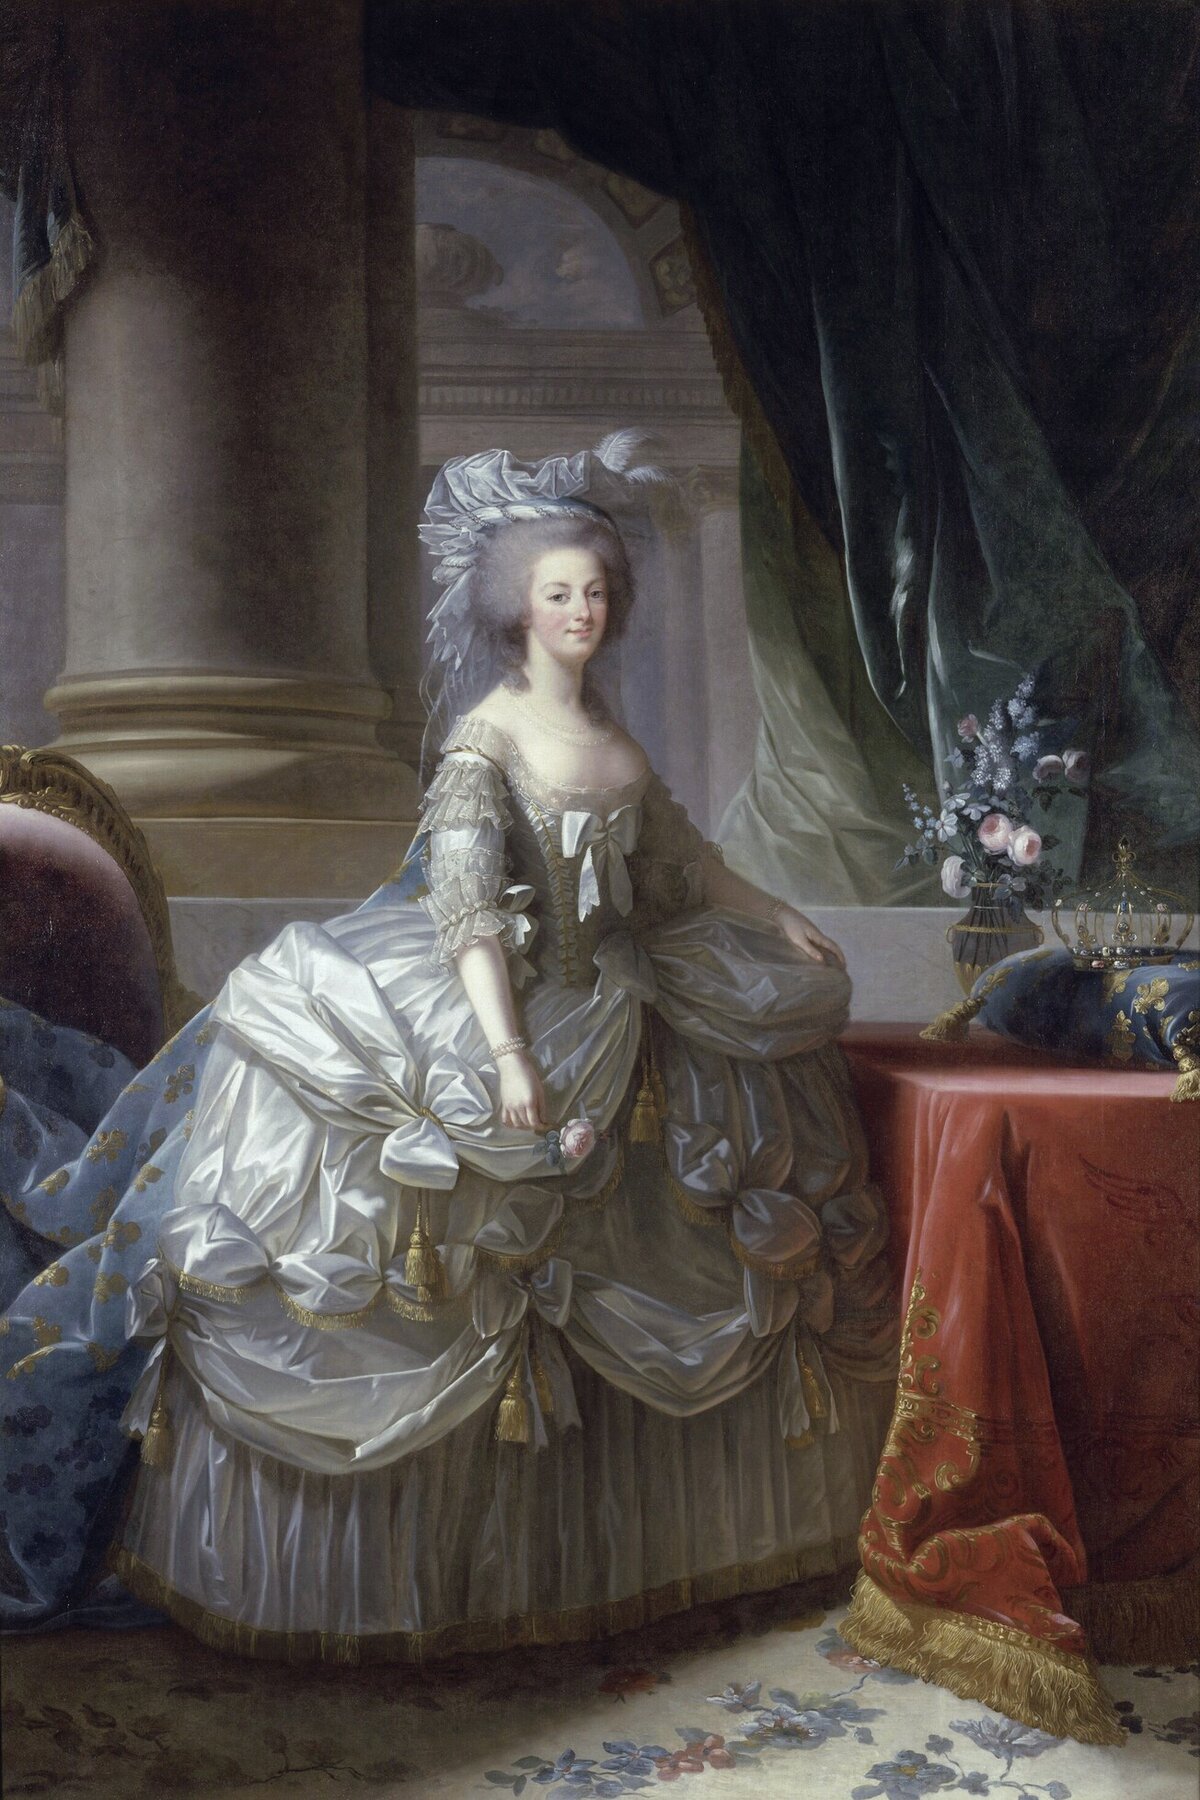 A panier a 17. és 18. században viselt női alsóruha, amelyek a szoknyák szélességét oldalt meghosszabbították, miközben az elülső és hátsó rész viszonylag lapos maradt. Ez olyan felületet biztosított, ahol a szövött minták, a díszes díszítések és a gazdag hímzések megjelenhettek és teljes mértékben értékelhetők voltak.